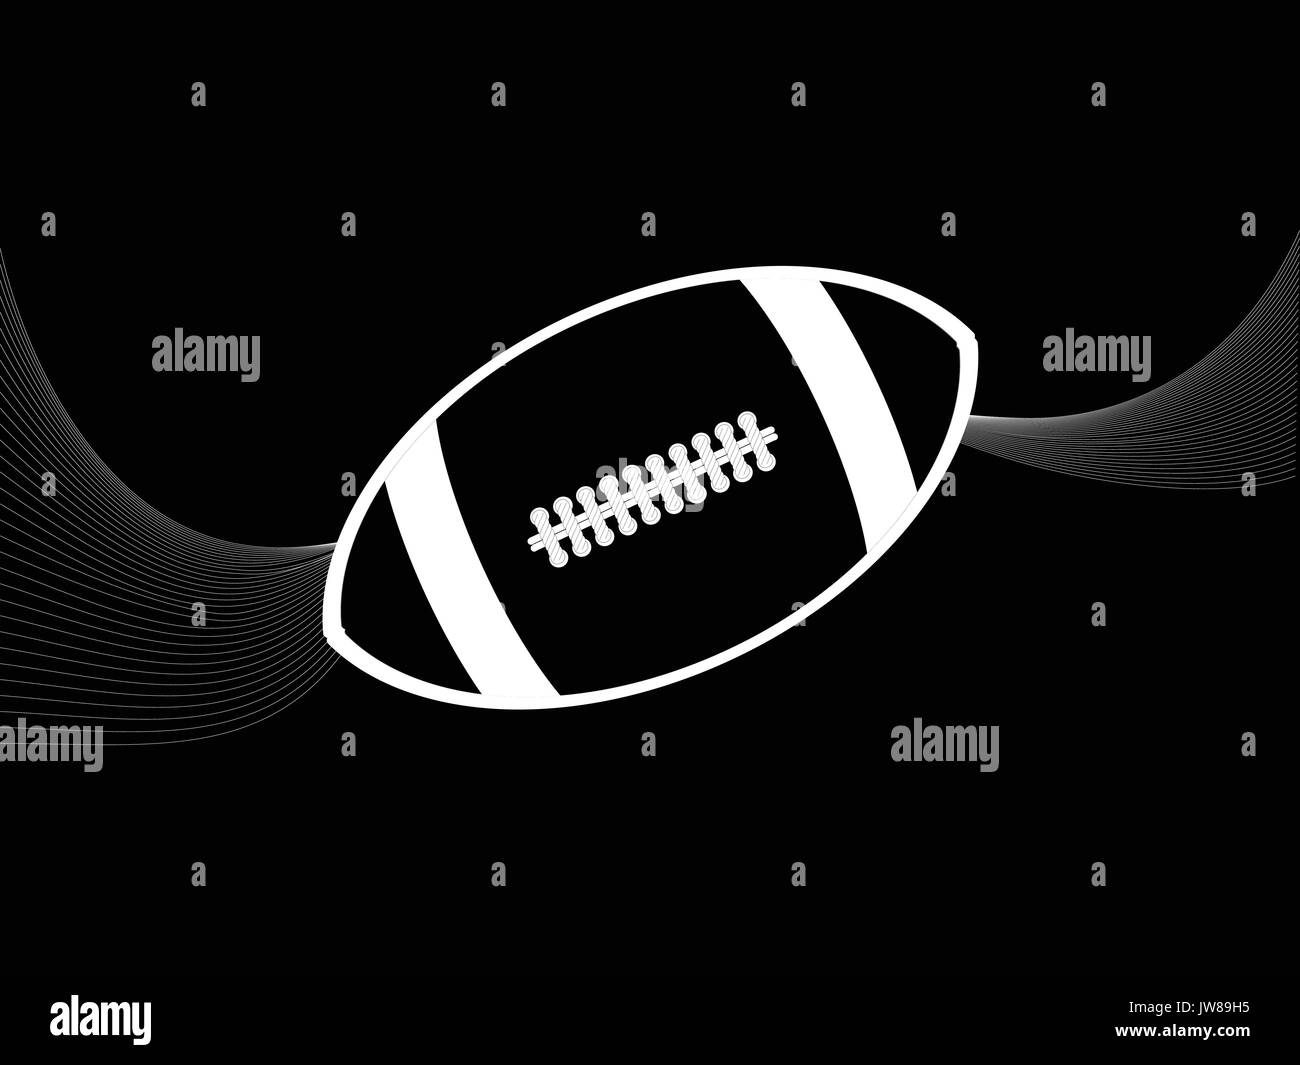 Weiße Silhouette einer Rugby American Football mit Wellen auf schwarzem Hintergrund Stock Vektor